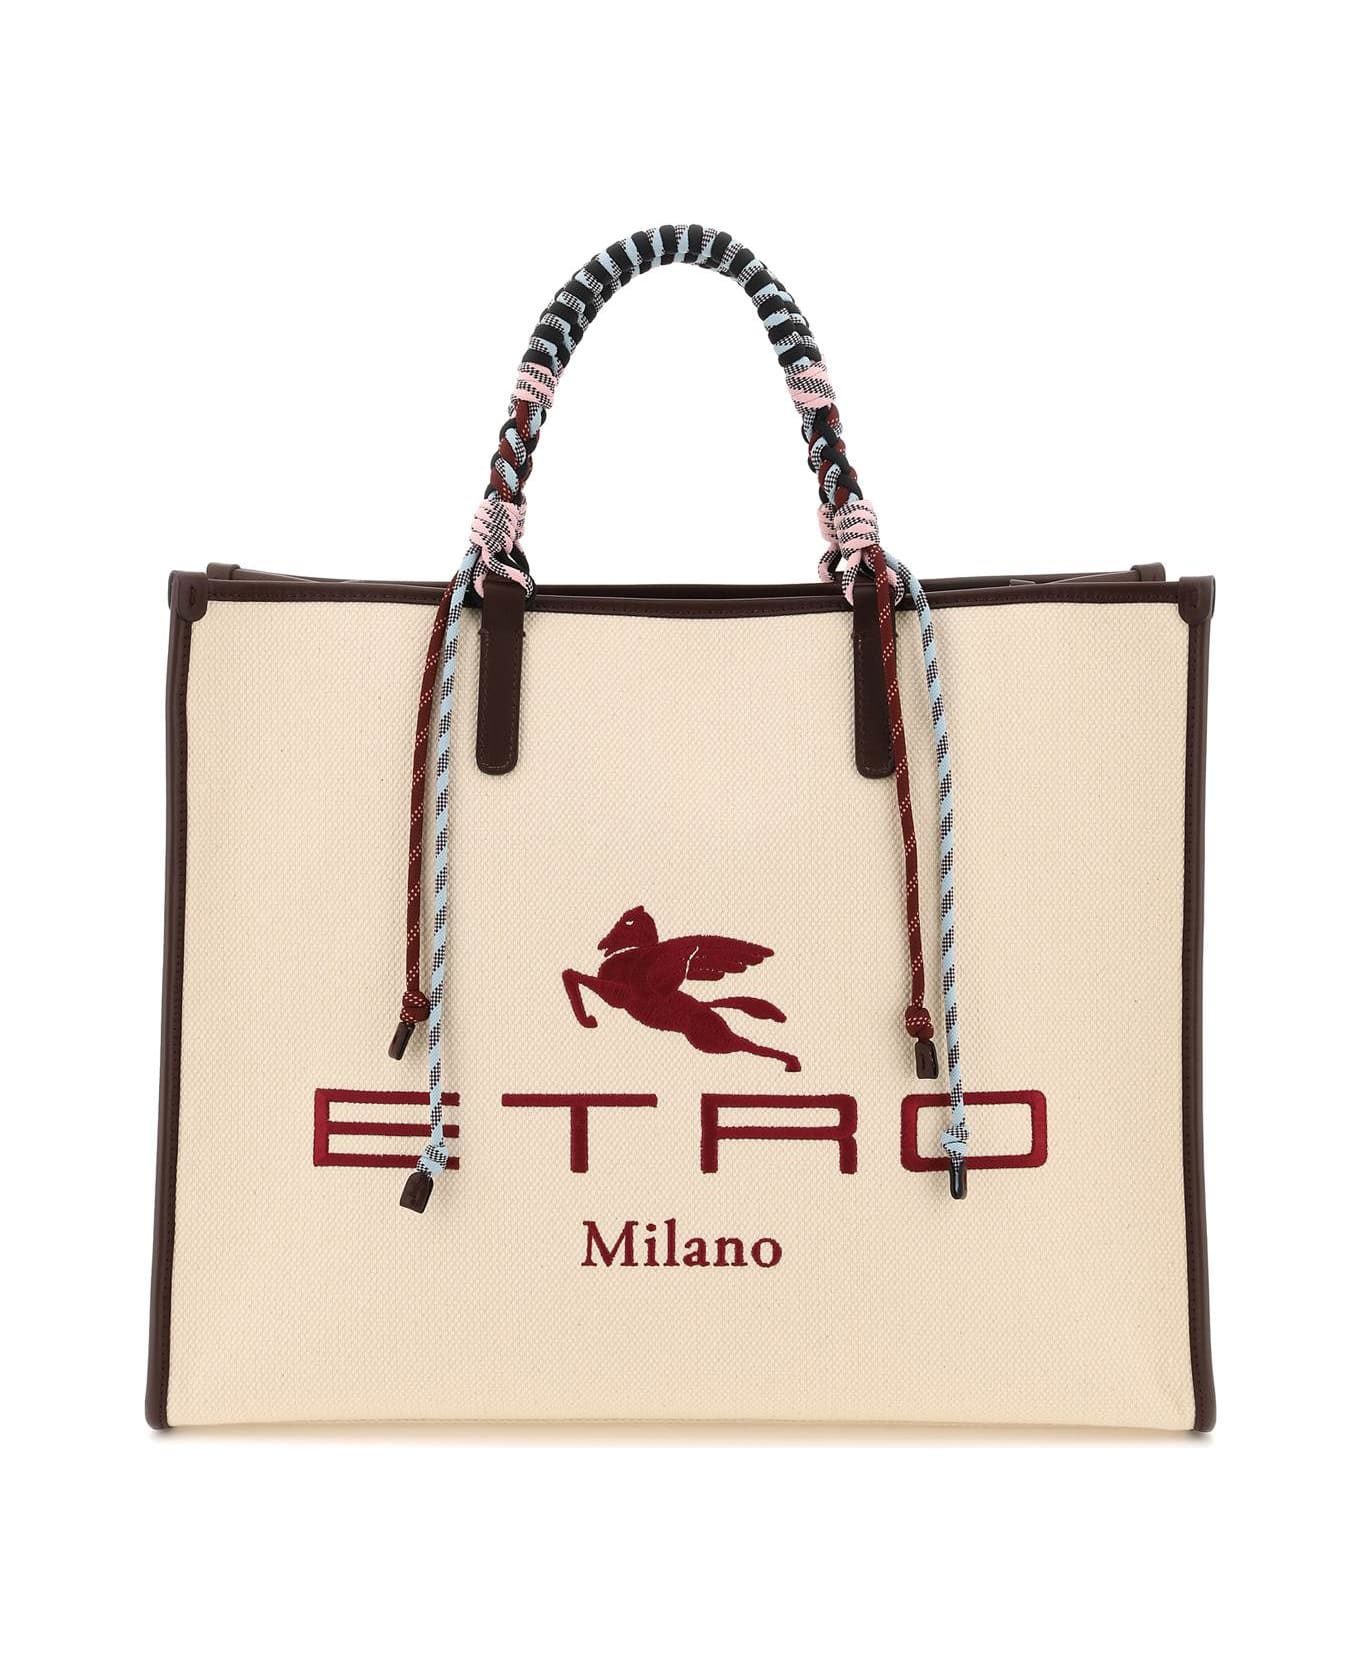 Etro Shopper Bag With Braided Handles - BEIGE (Beige) トートバッグ